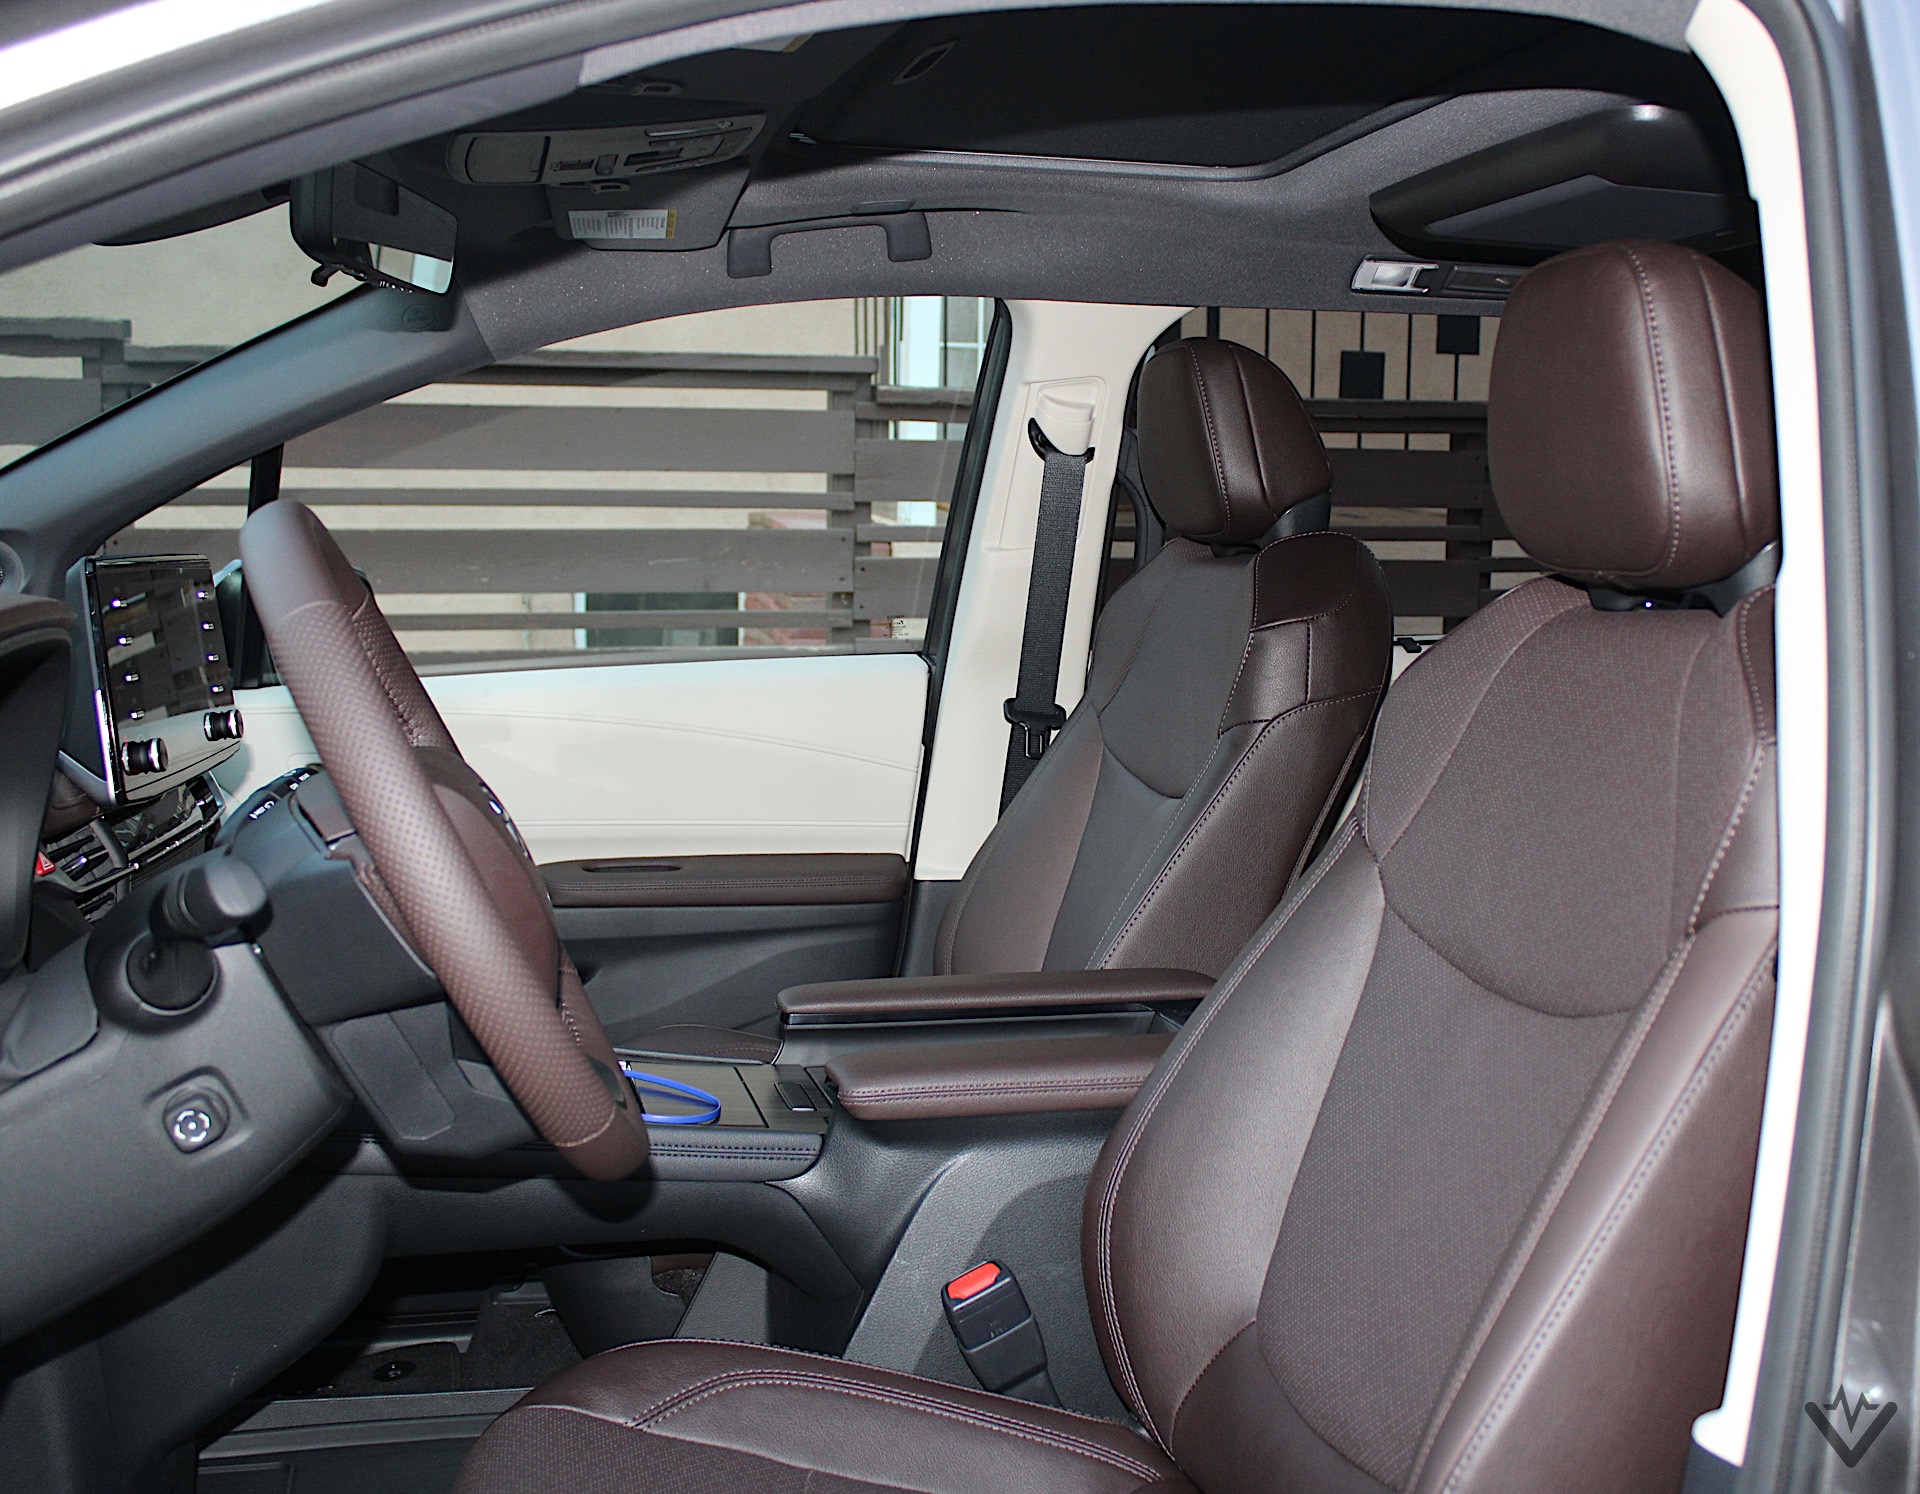 2021 Toyota Sienna interior 09 1